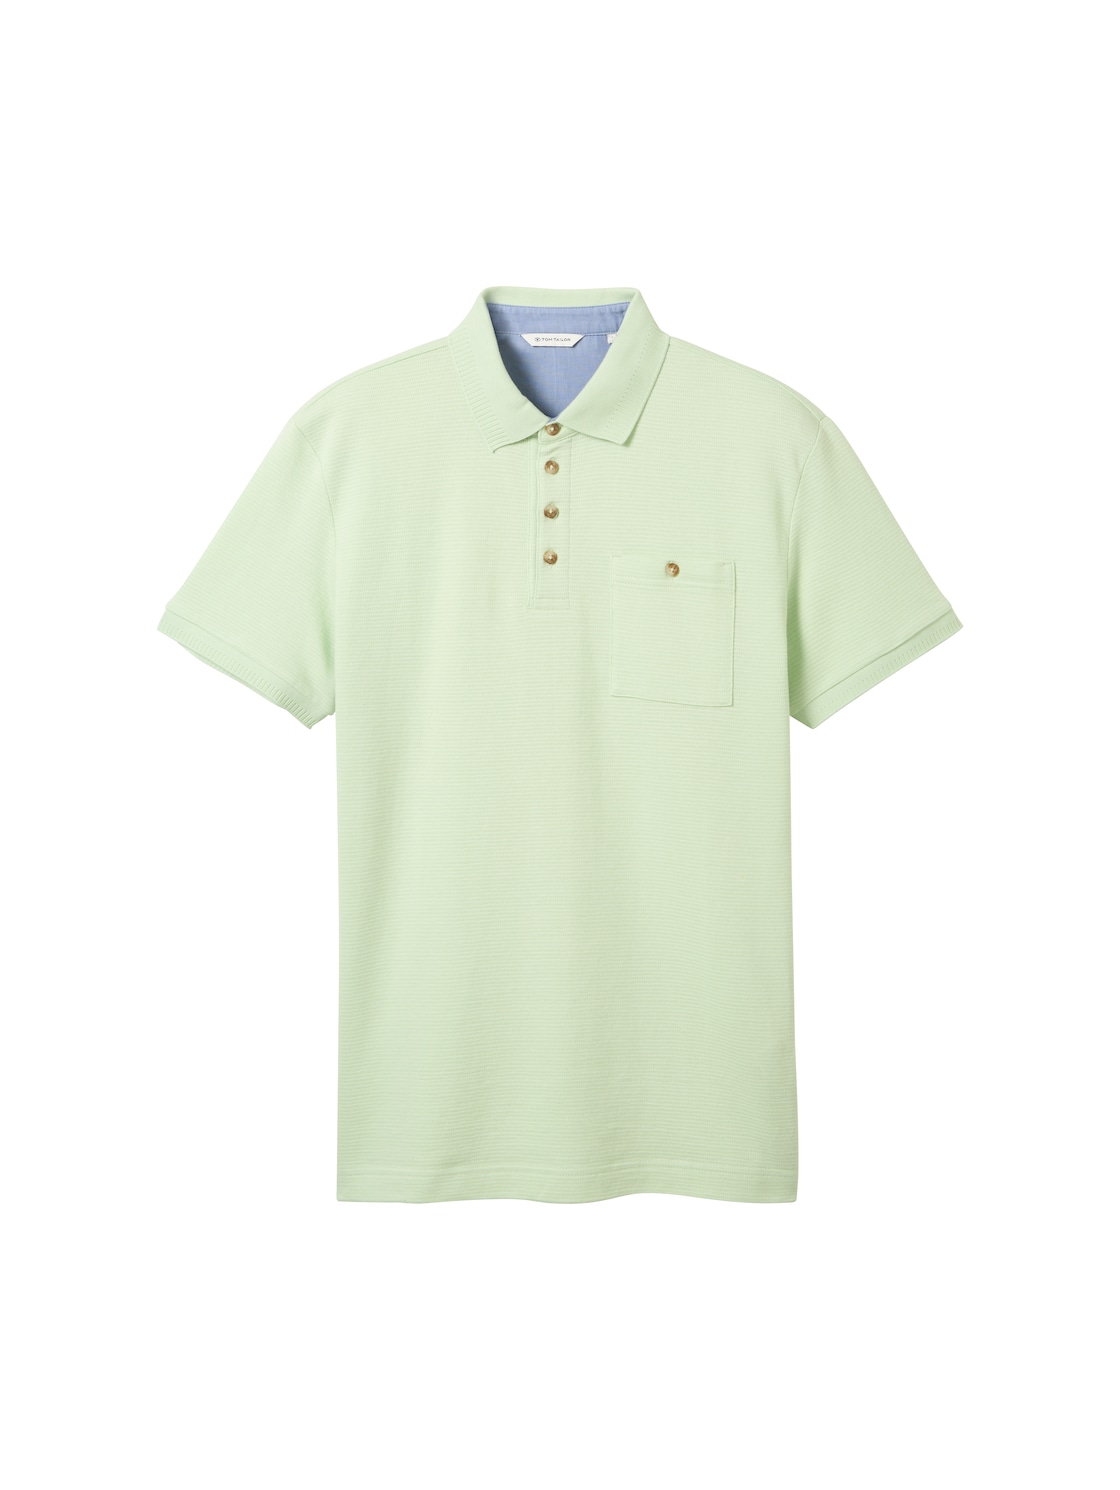 TOM TAILOR Herren Poloshirt mit Struktur, grün, Uni, Gr. XL von Tom Tailor